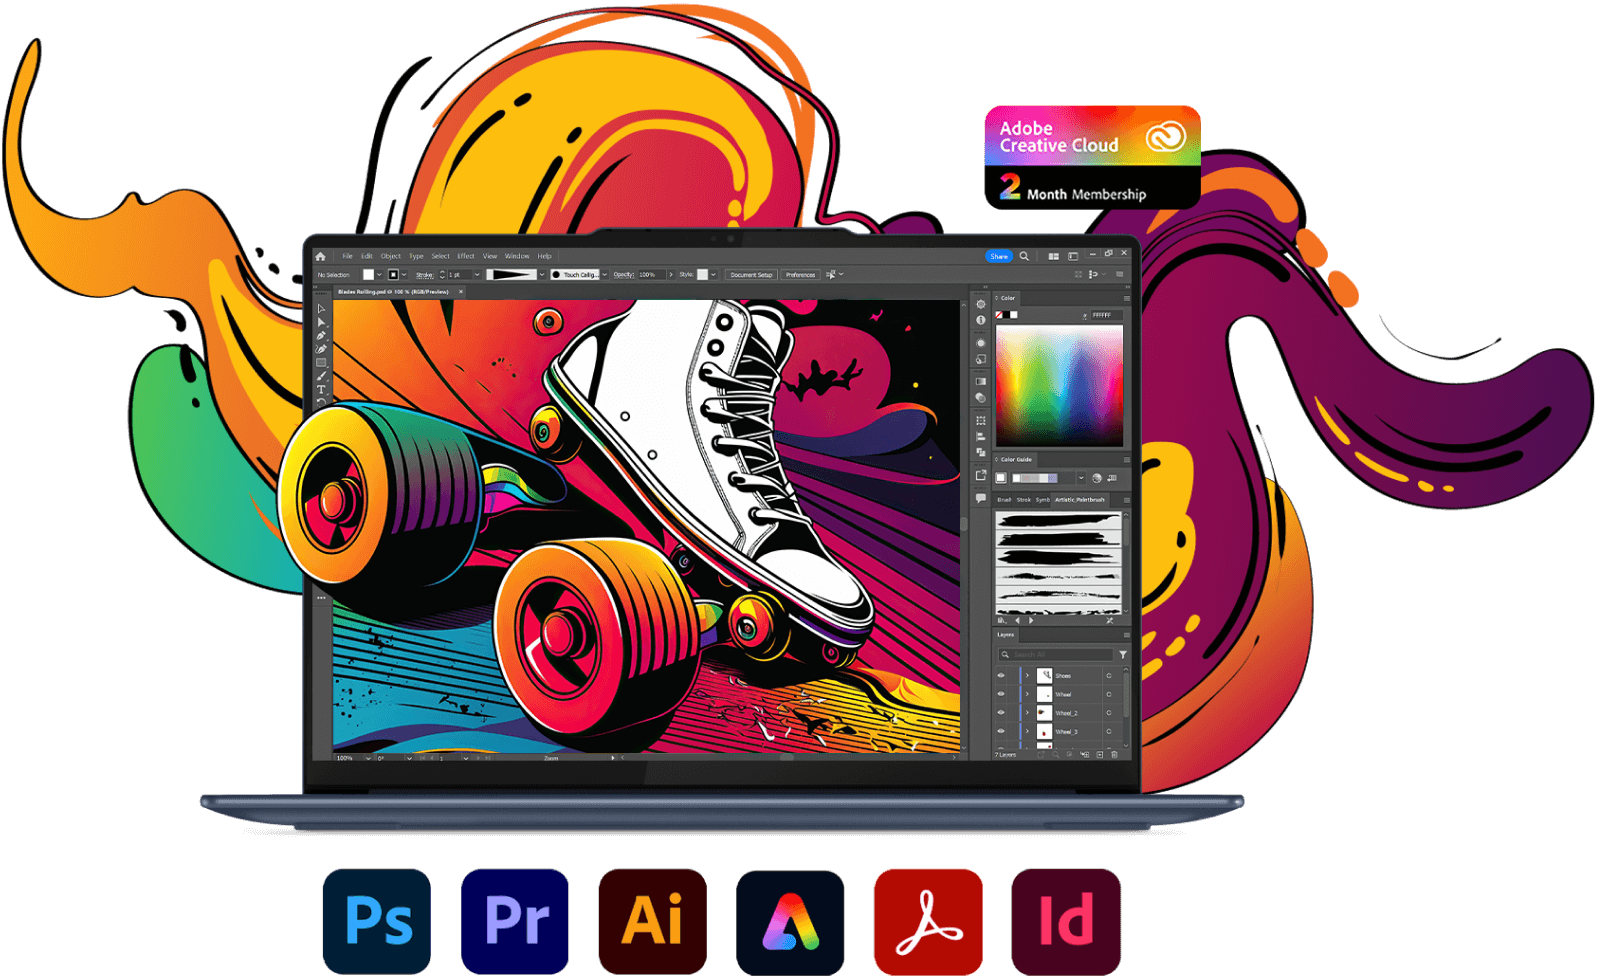 Přední strana notebooku Lenovo Yoga s programem Photoshop na obrazovce a různými ikonami aplikací Adobe Creative Cloud.